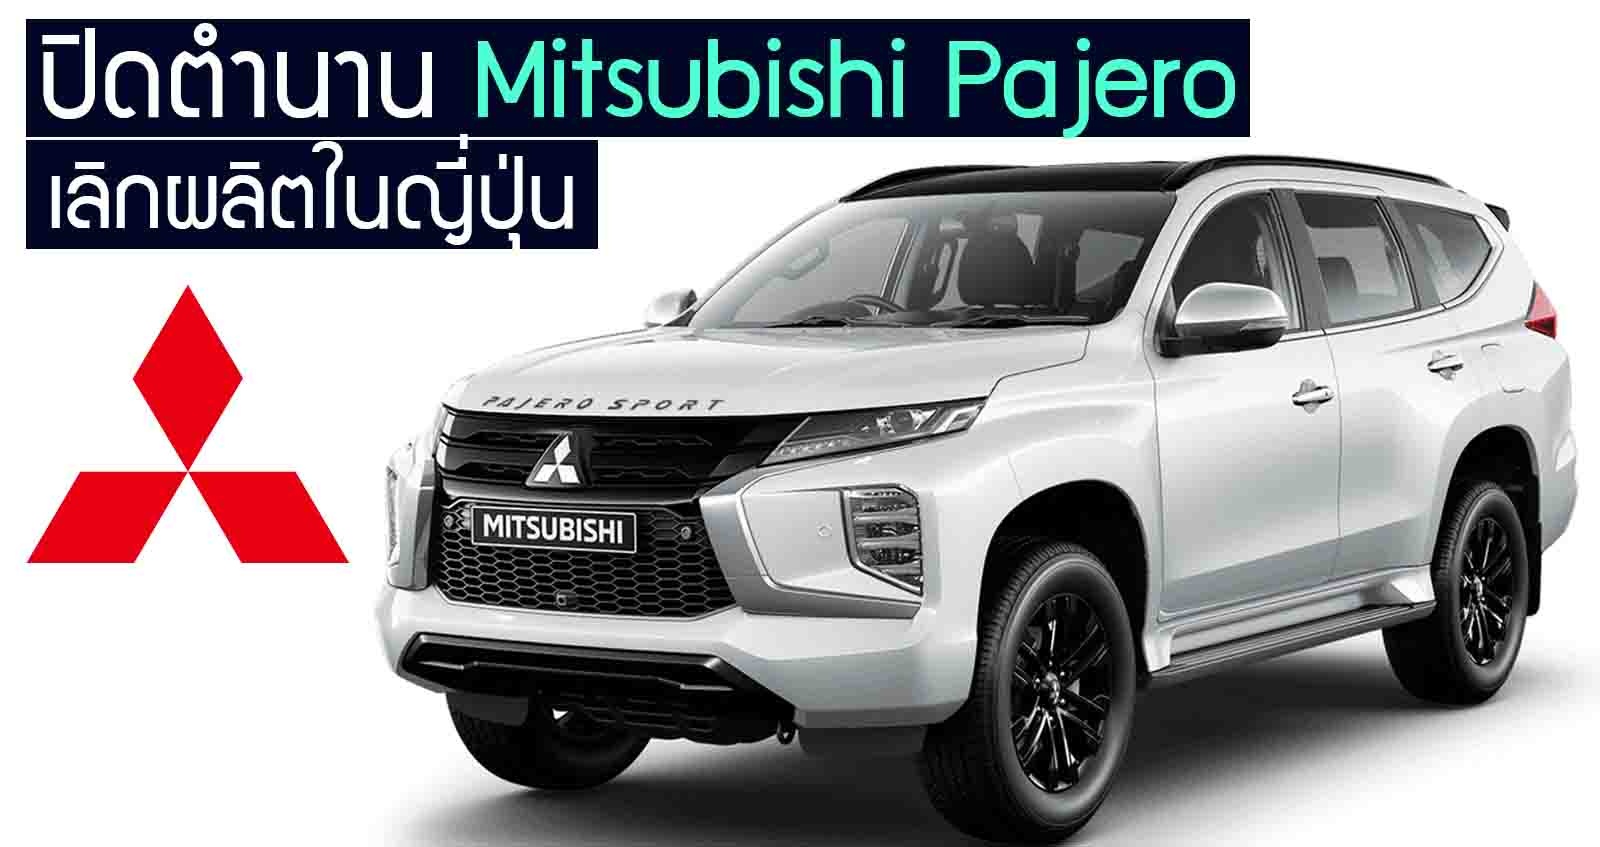 เลิกผลิต Mitsubishi Pajero ในญี่ปุ่น